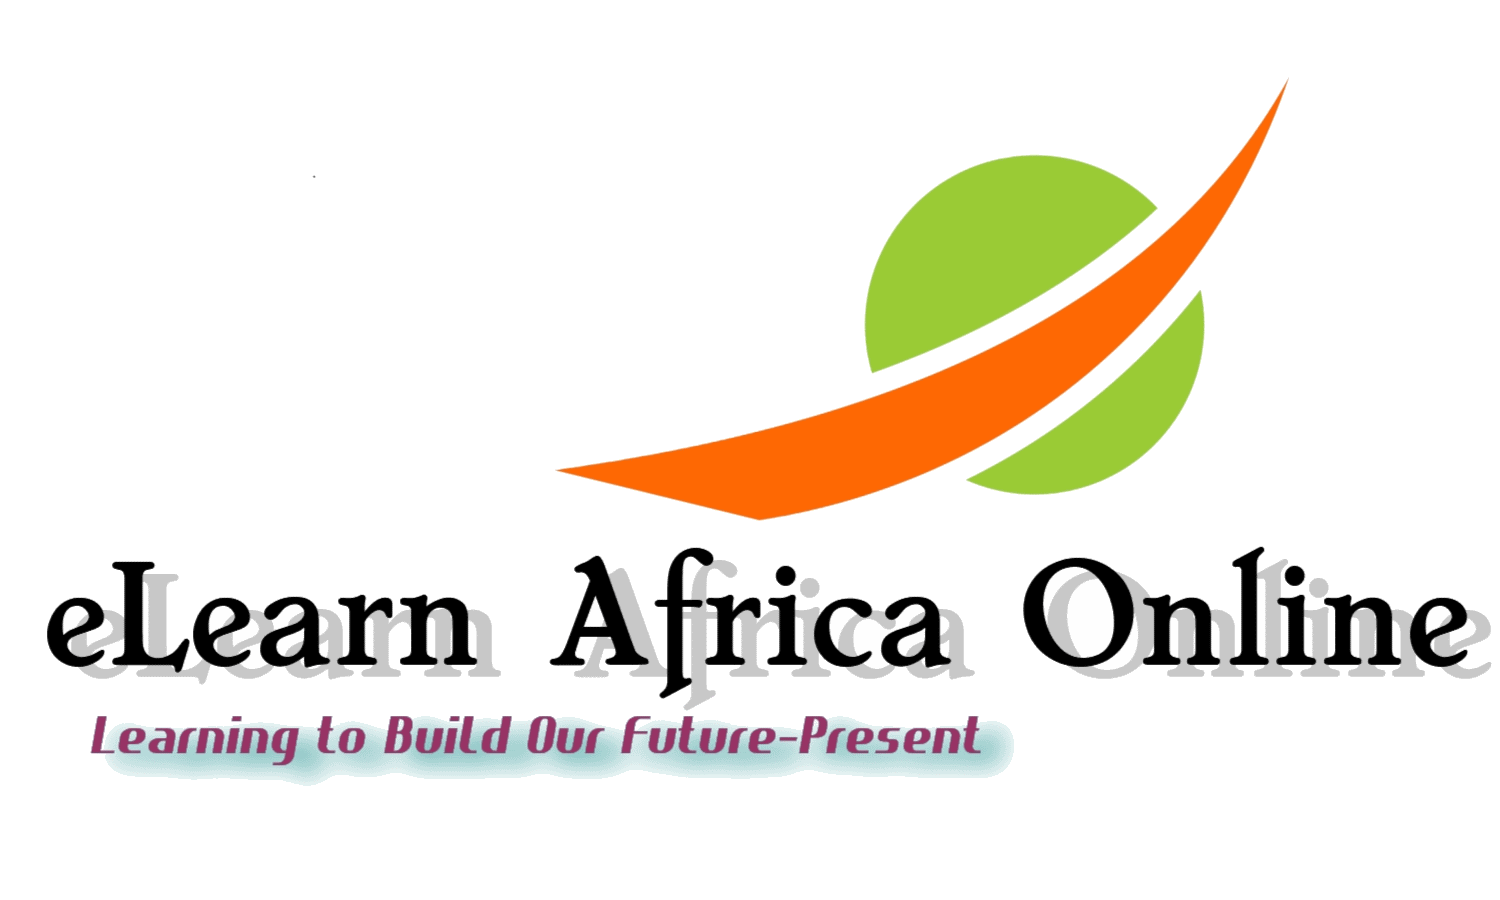 eLearn Africa Online